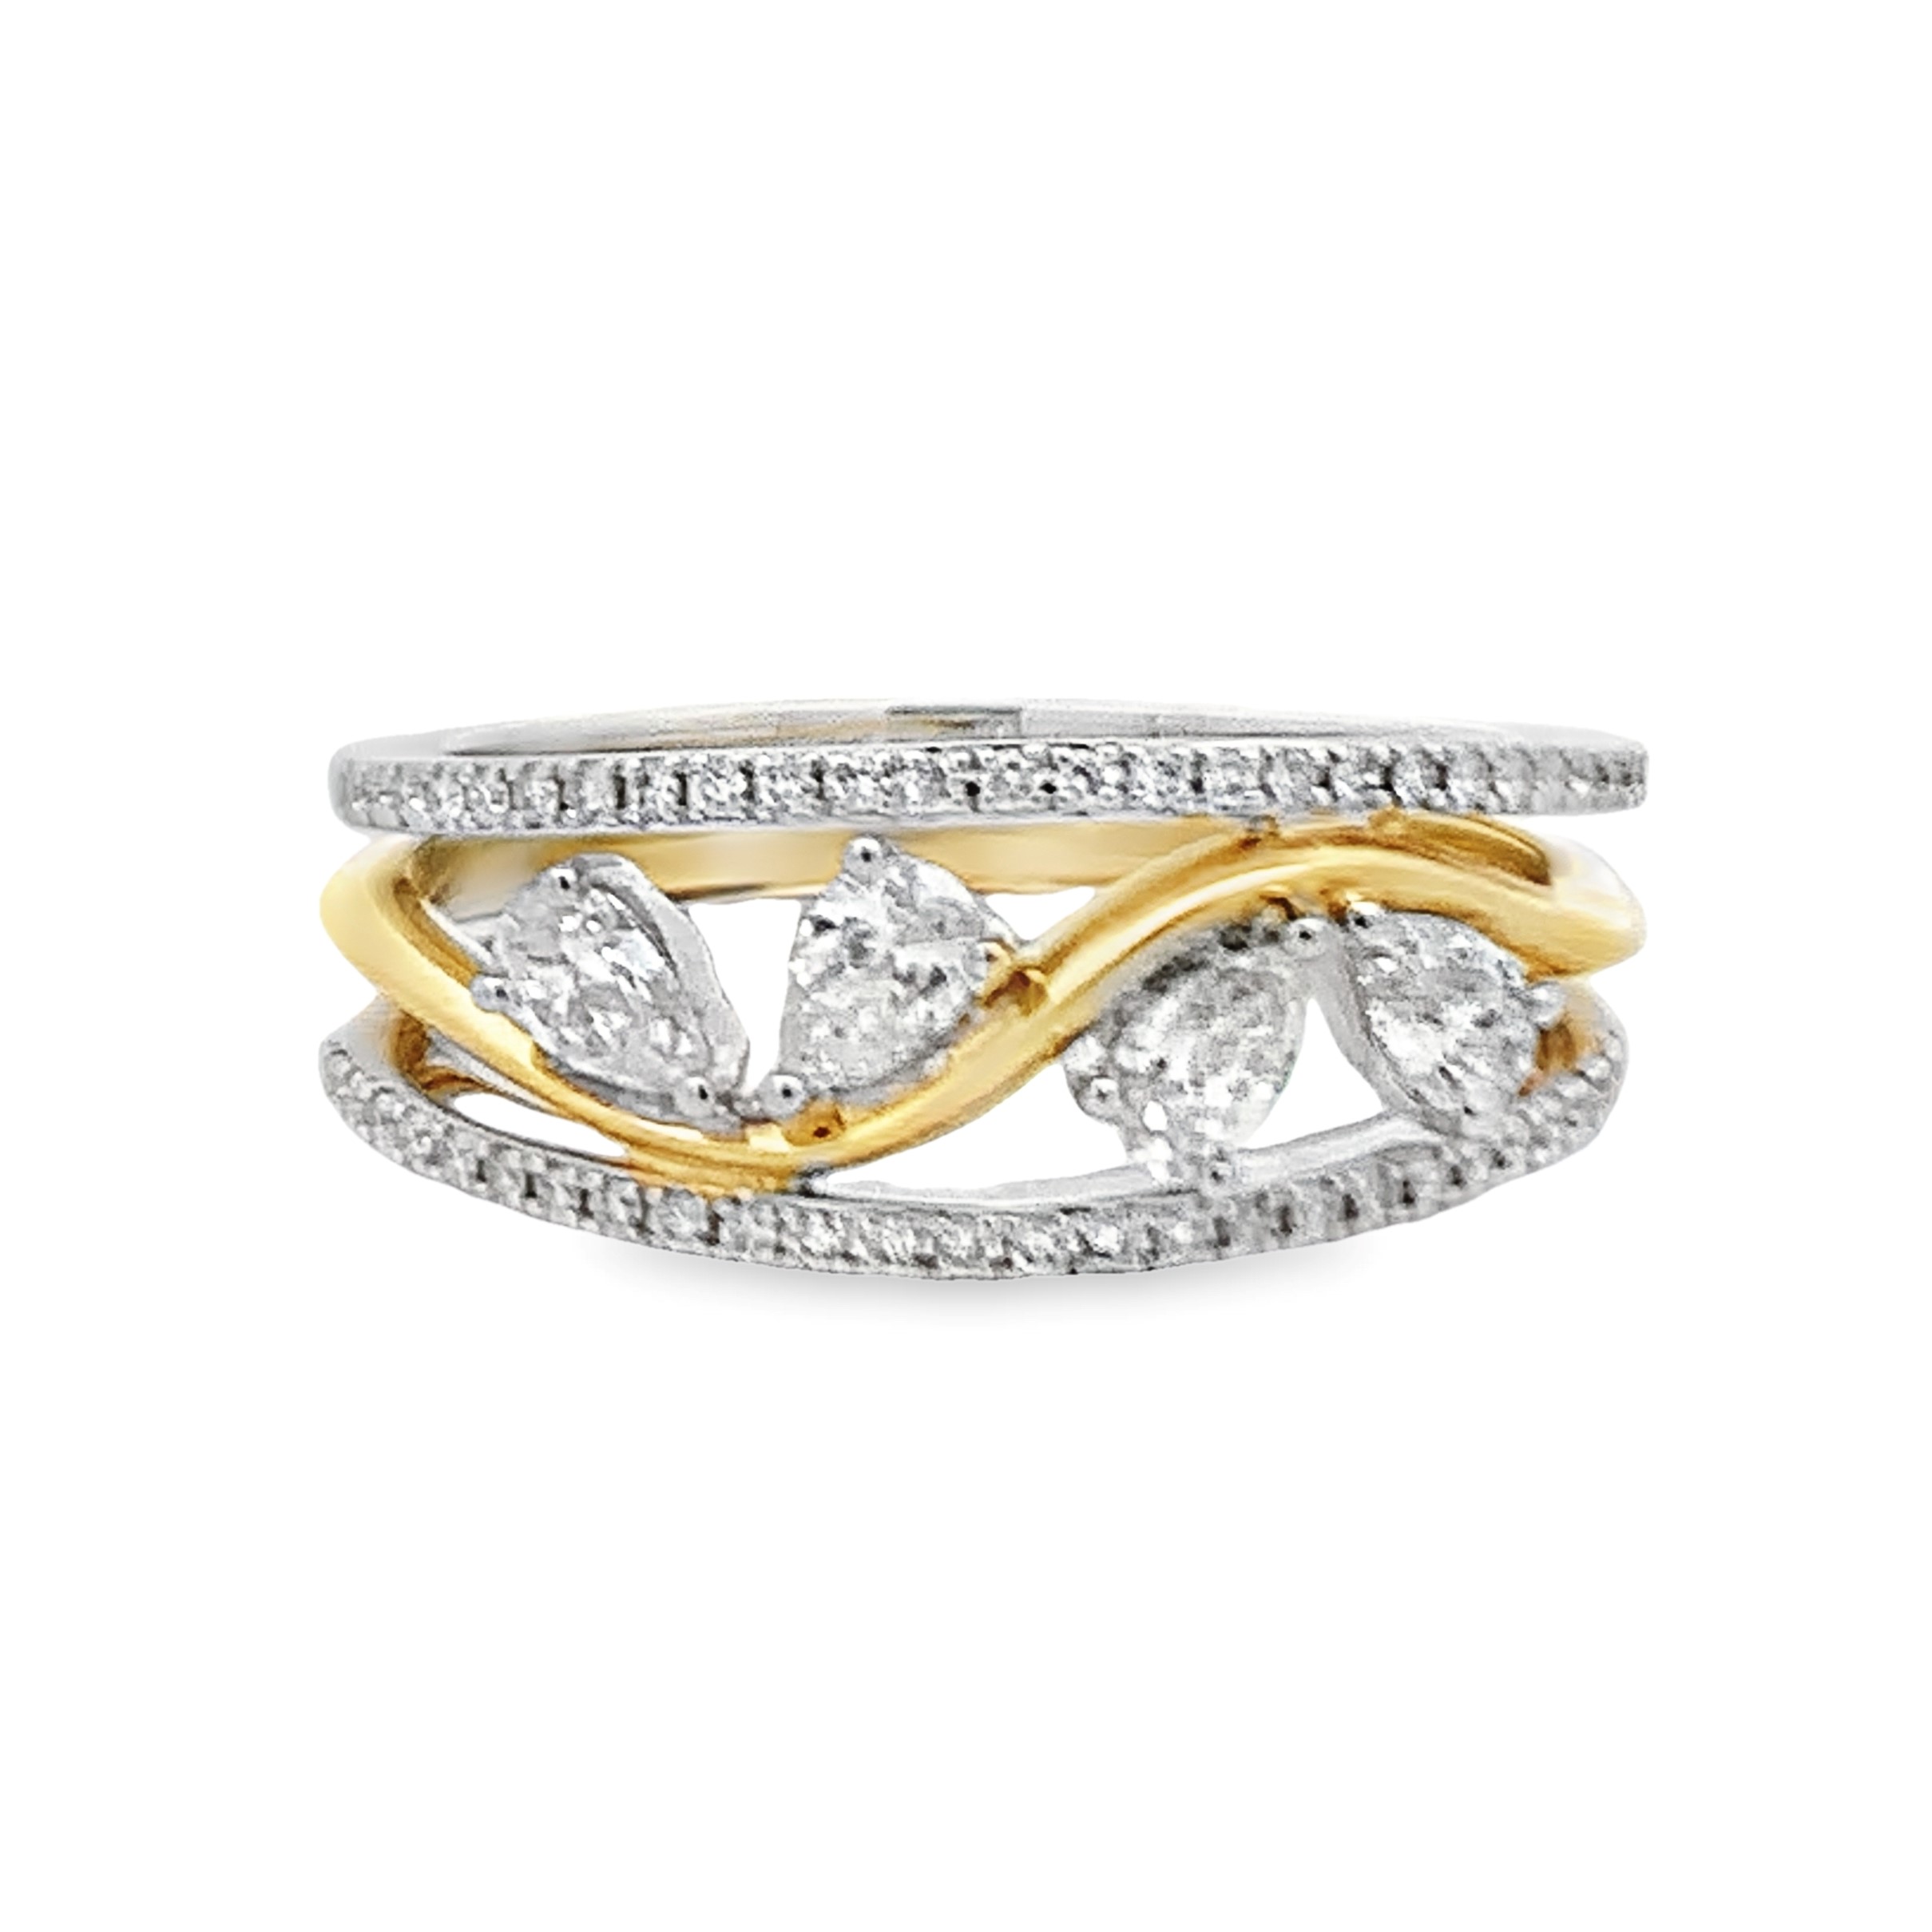 Simon G. 18K White & Yellow Gold Diamond Freeform Ring